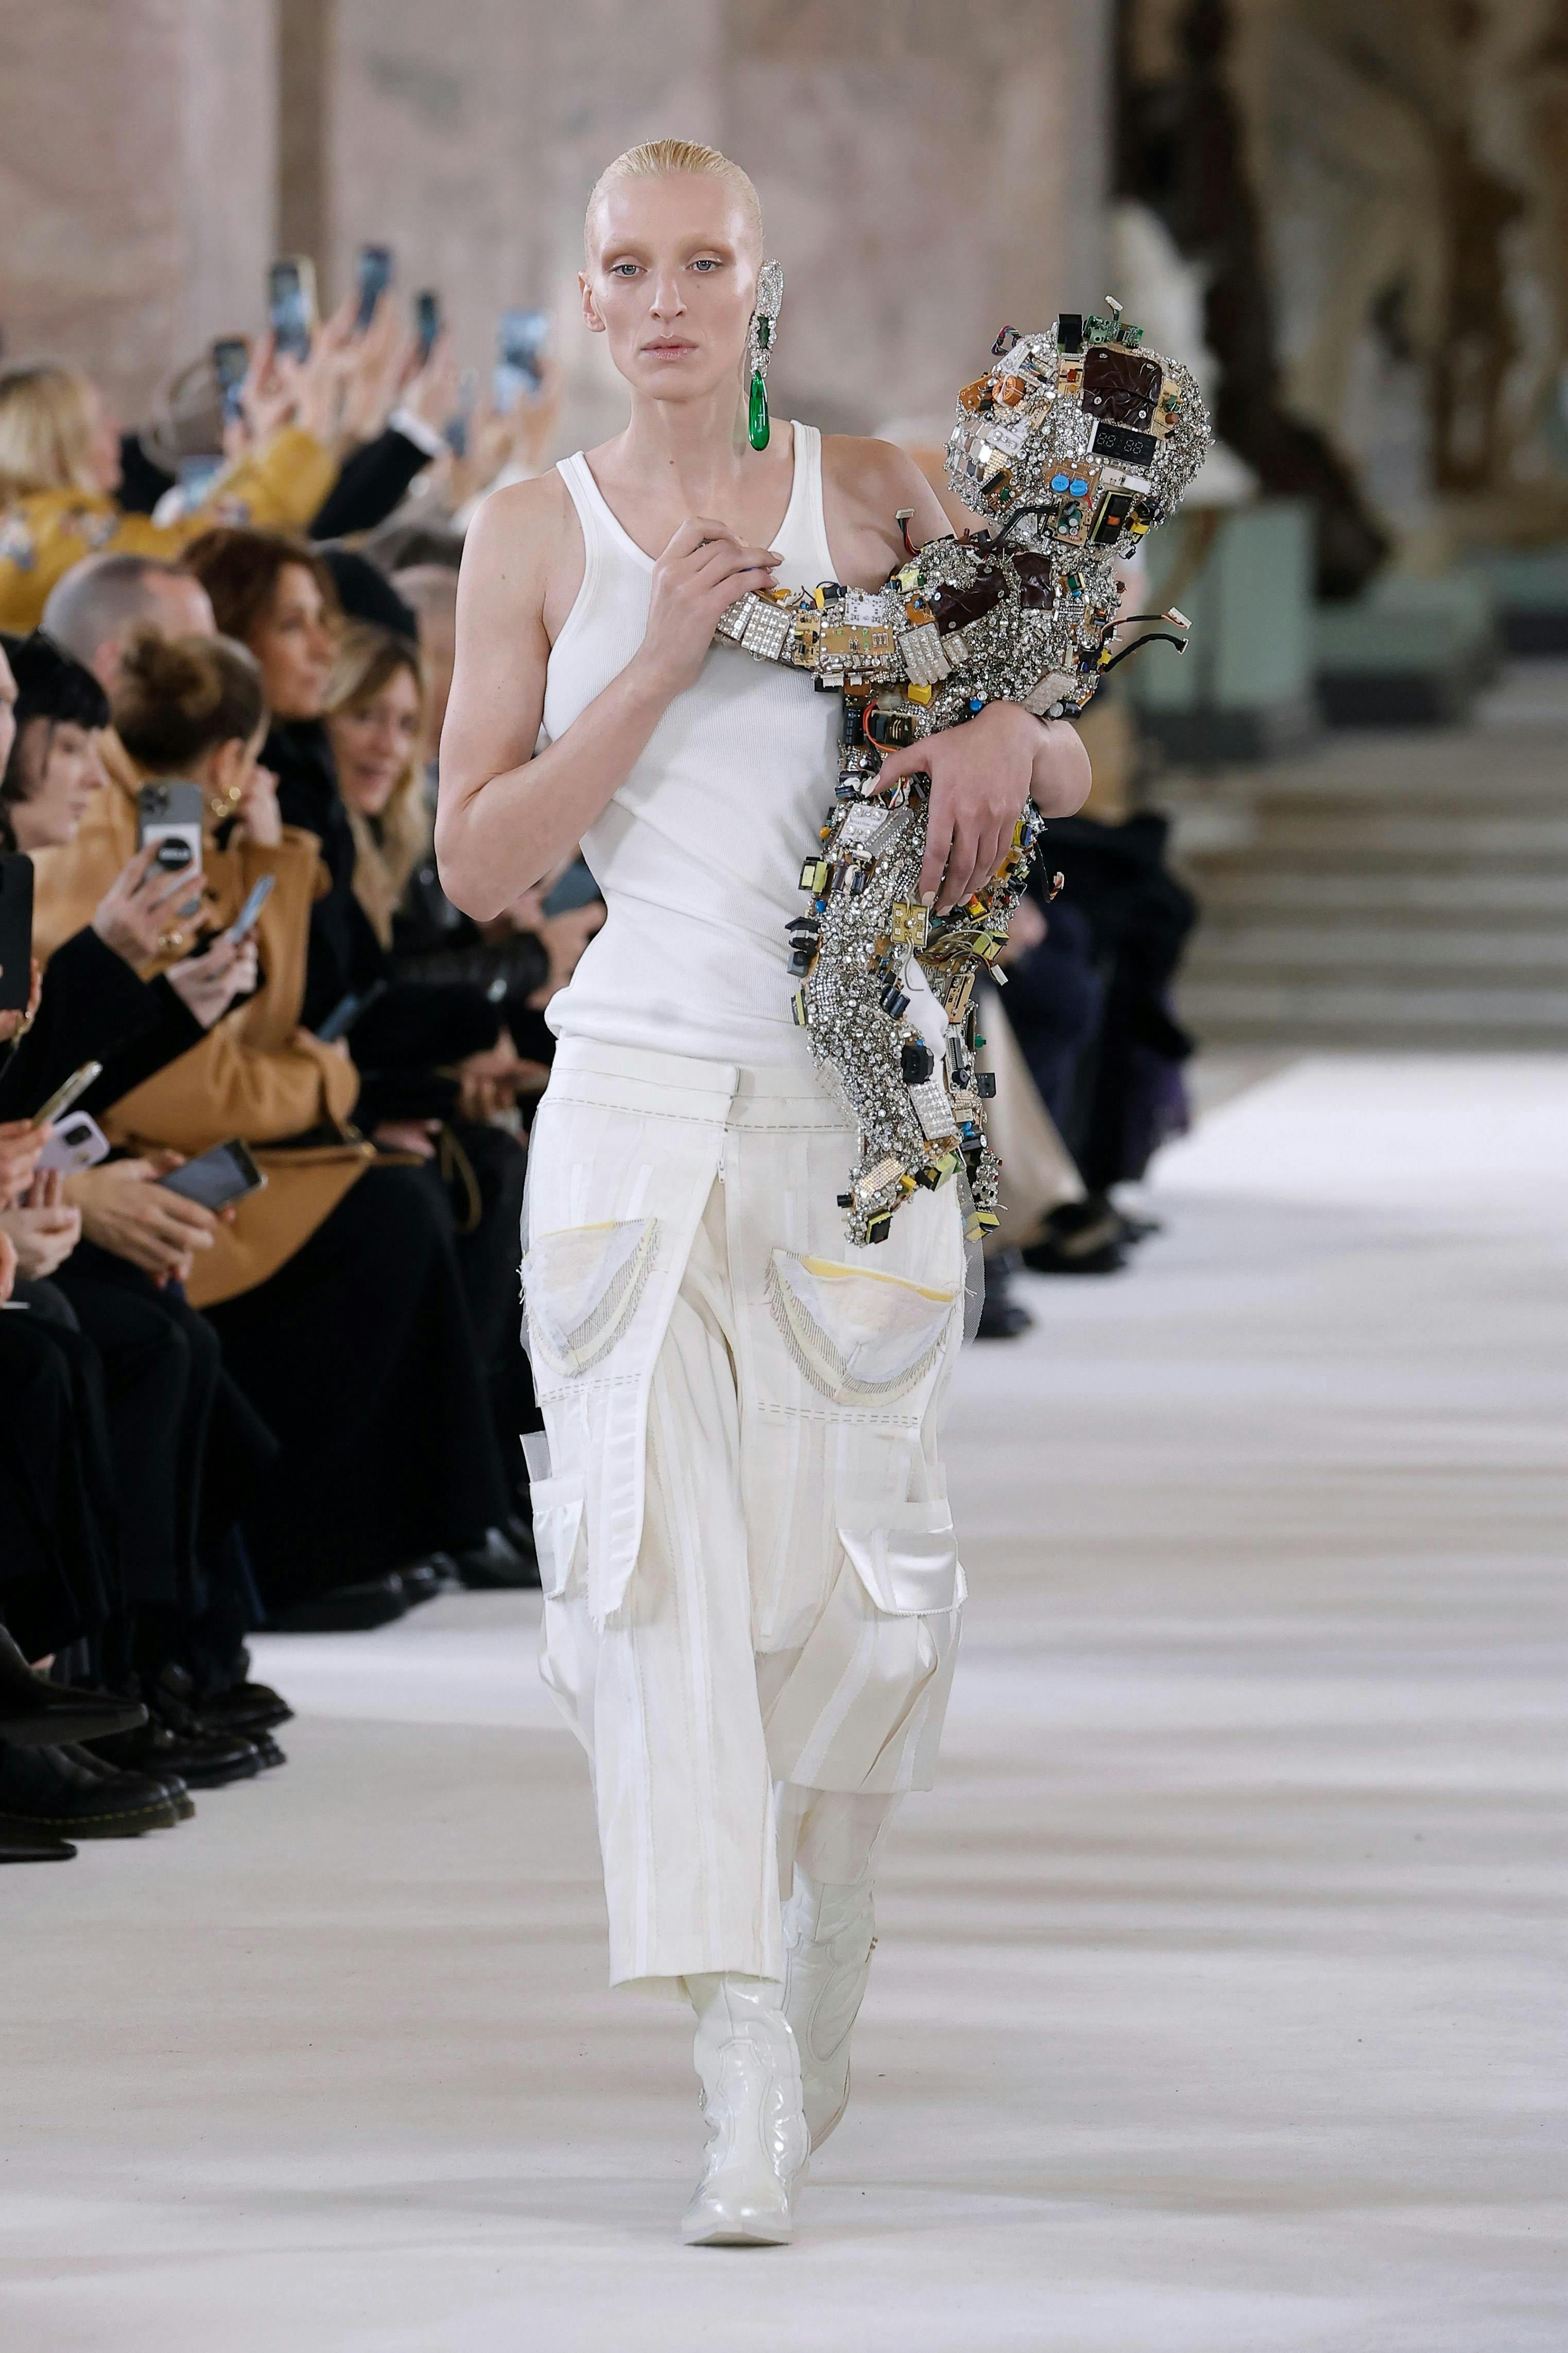 paris flower arrangement flower bouquet fashion formal wear dress adult bride female person woman